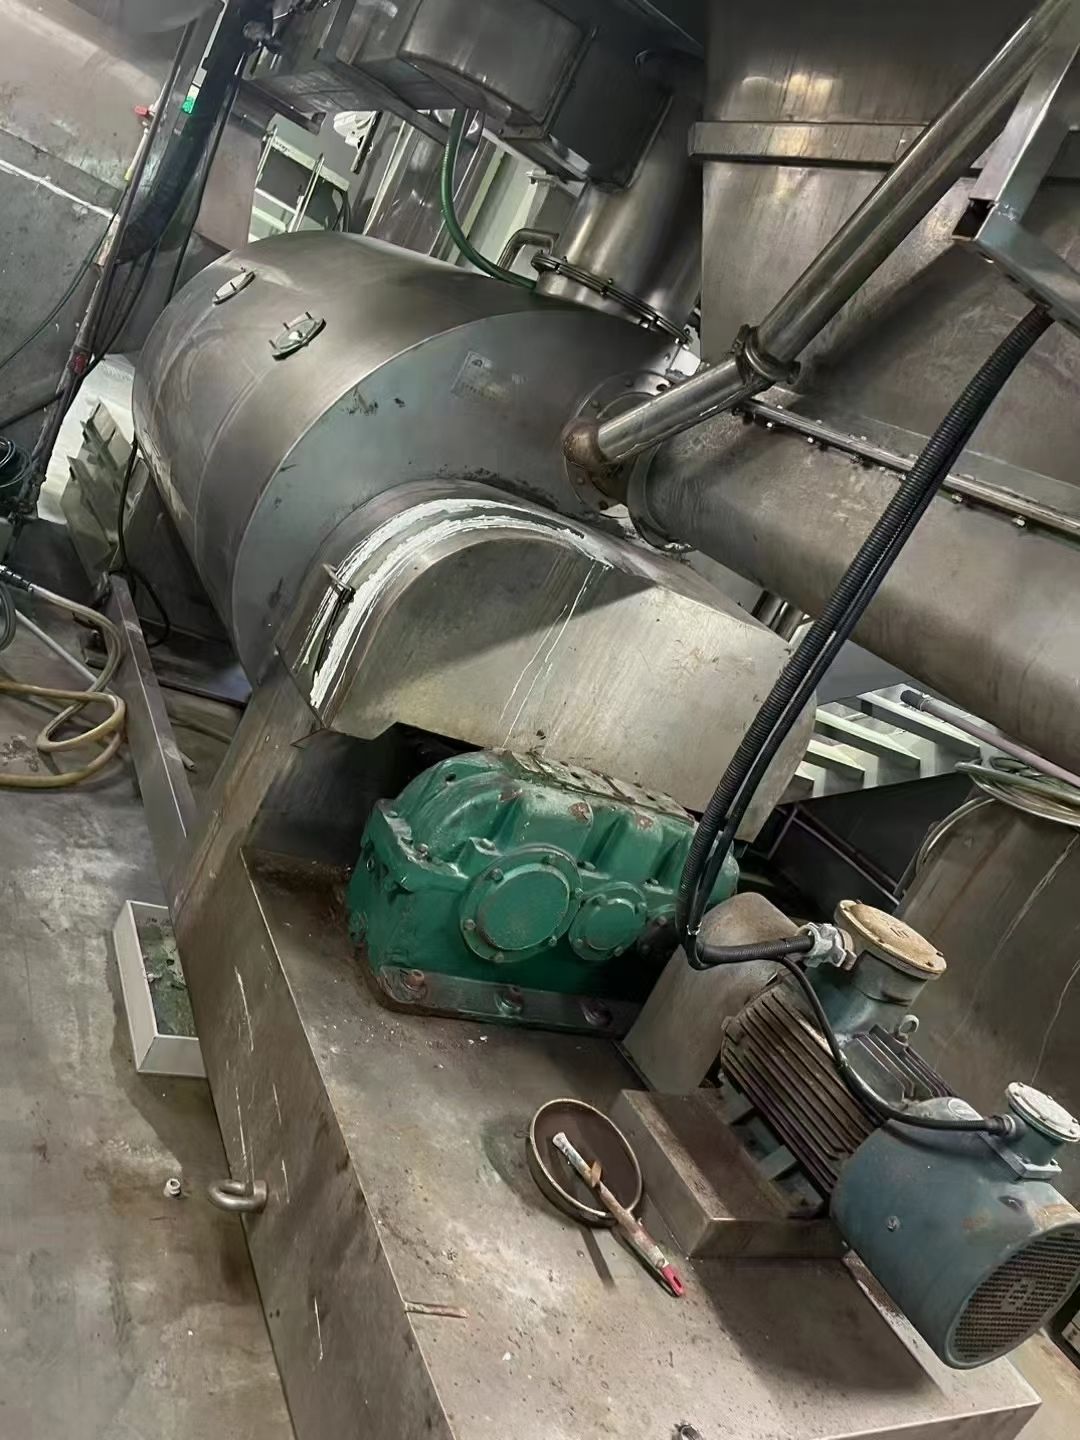 转让二手耙式干燥机 一台容积2000L内钛材真空耙式干燥机